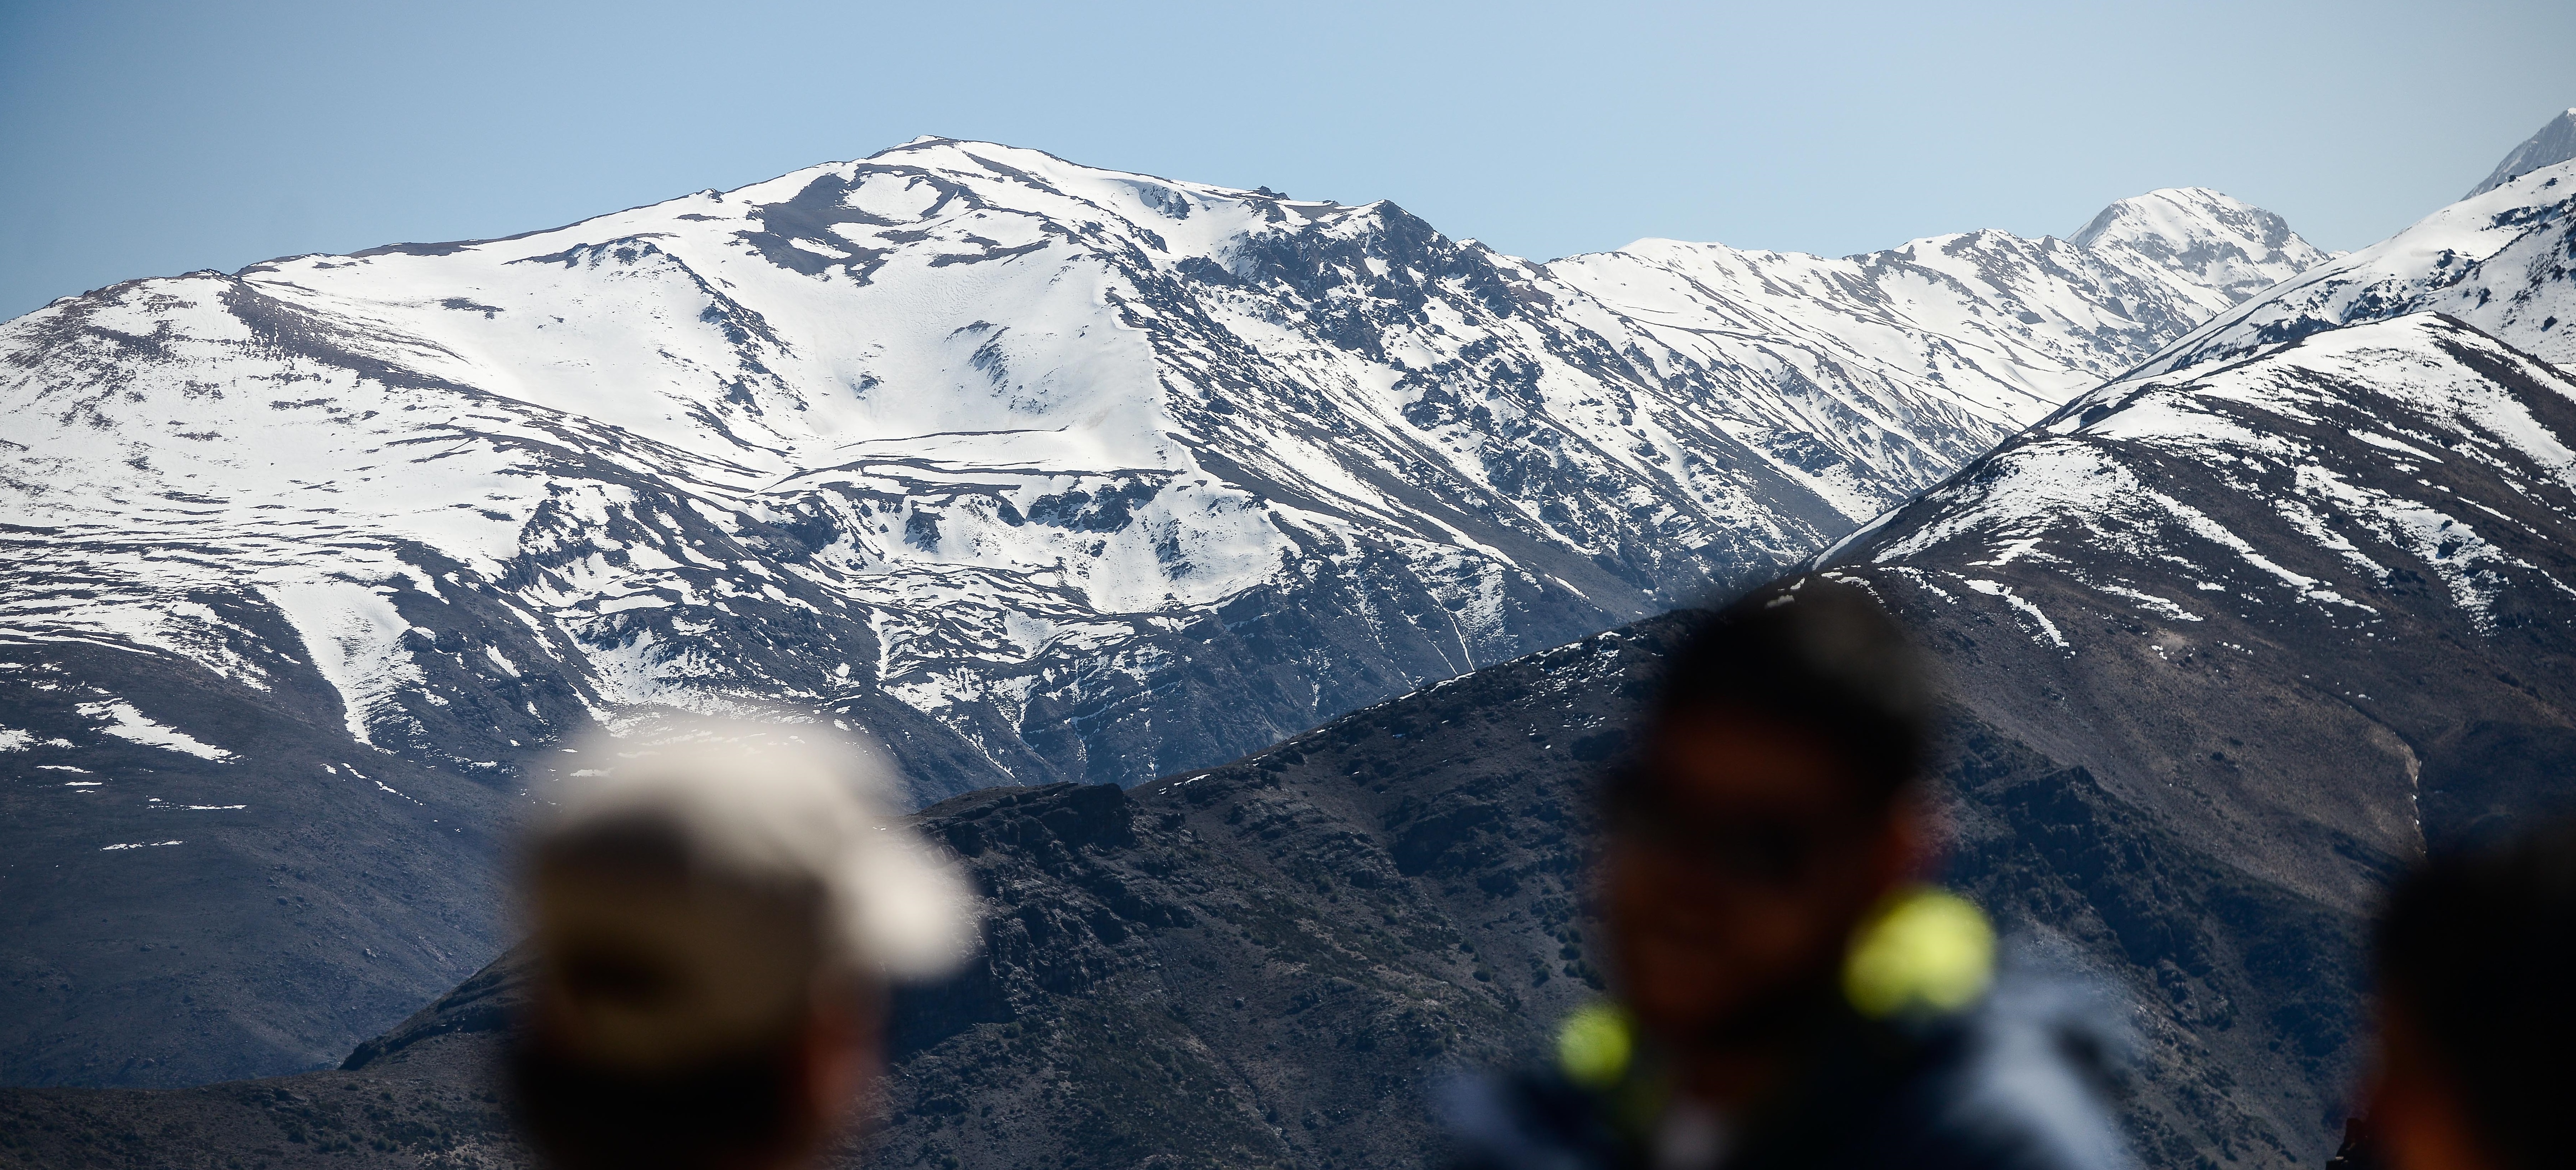 Informan desaparición de 3 andinistas argentinos en la Cordillera de los Andes: uno es intendente